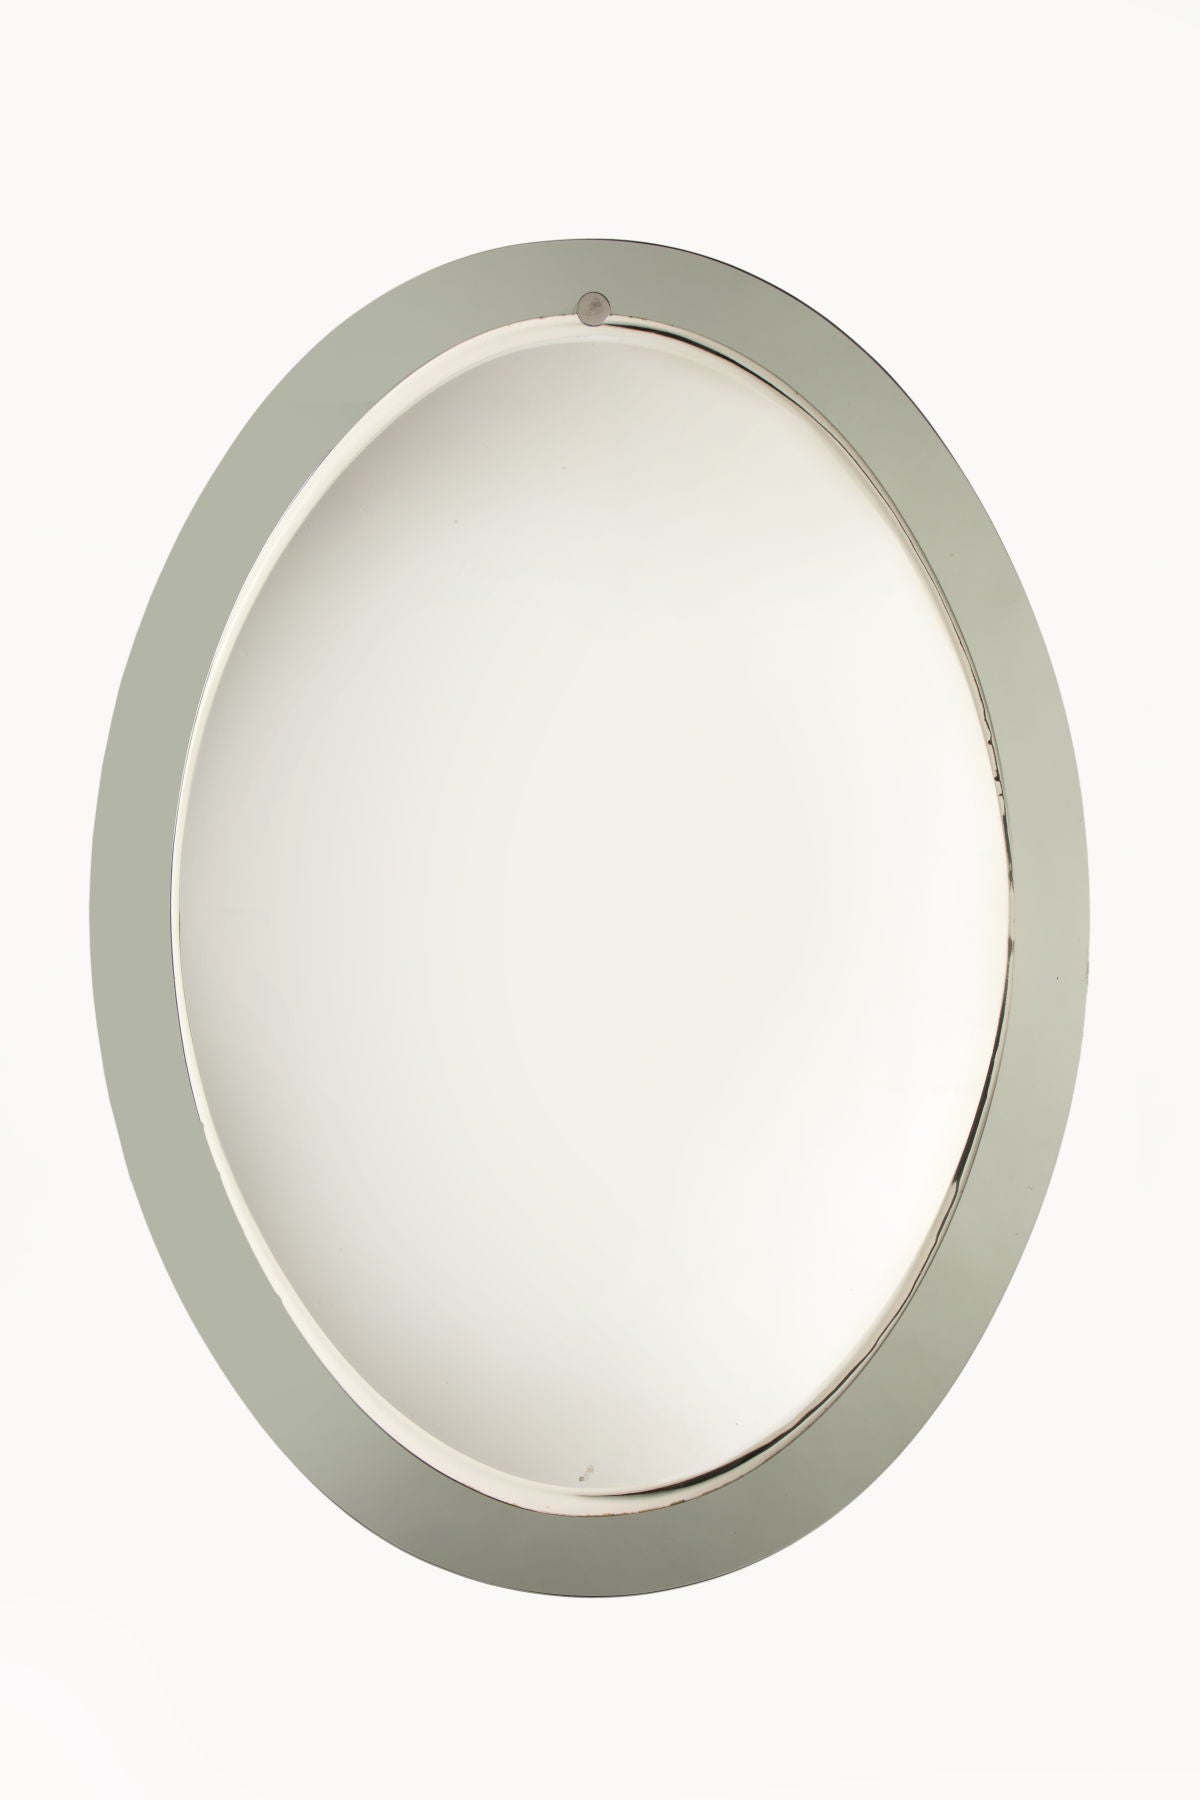 Specchio ovale bordo fumé anni 70